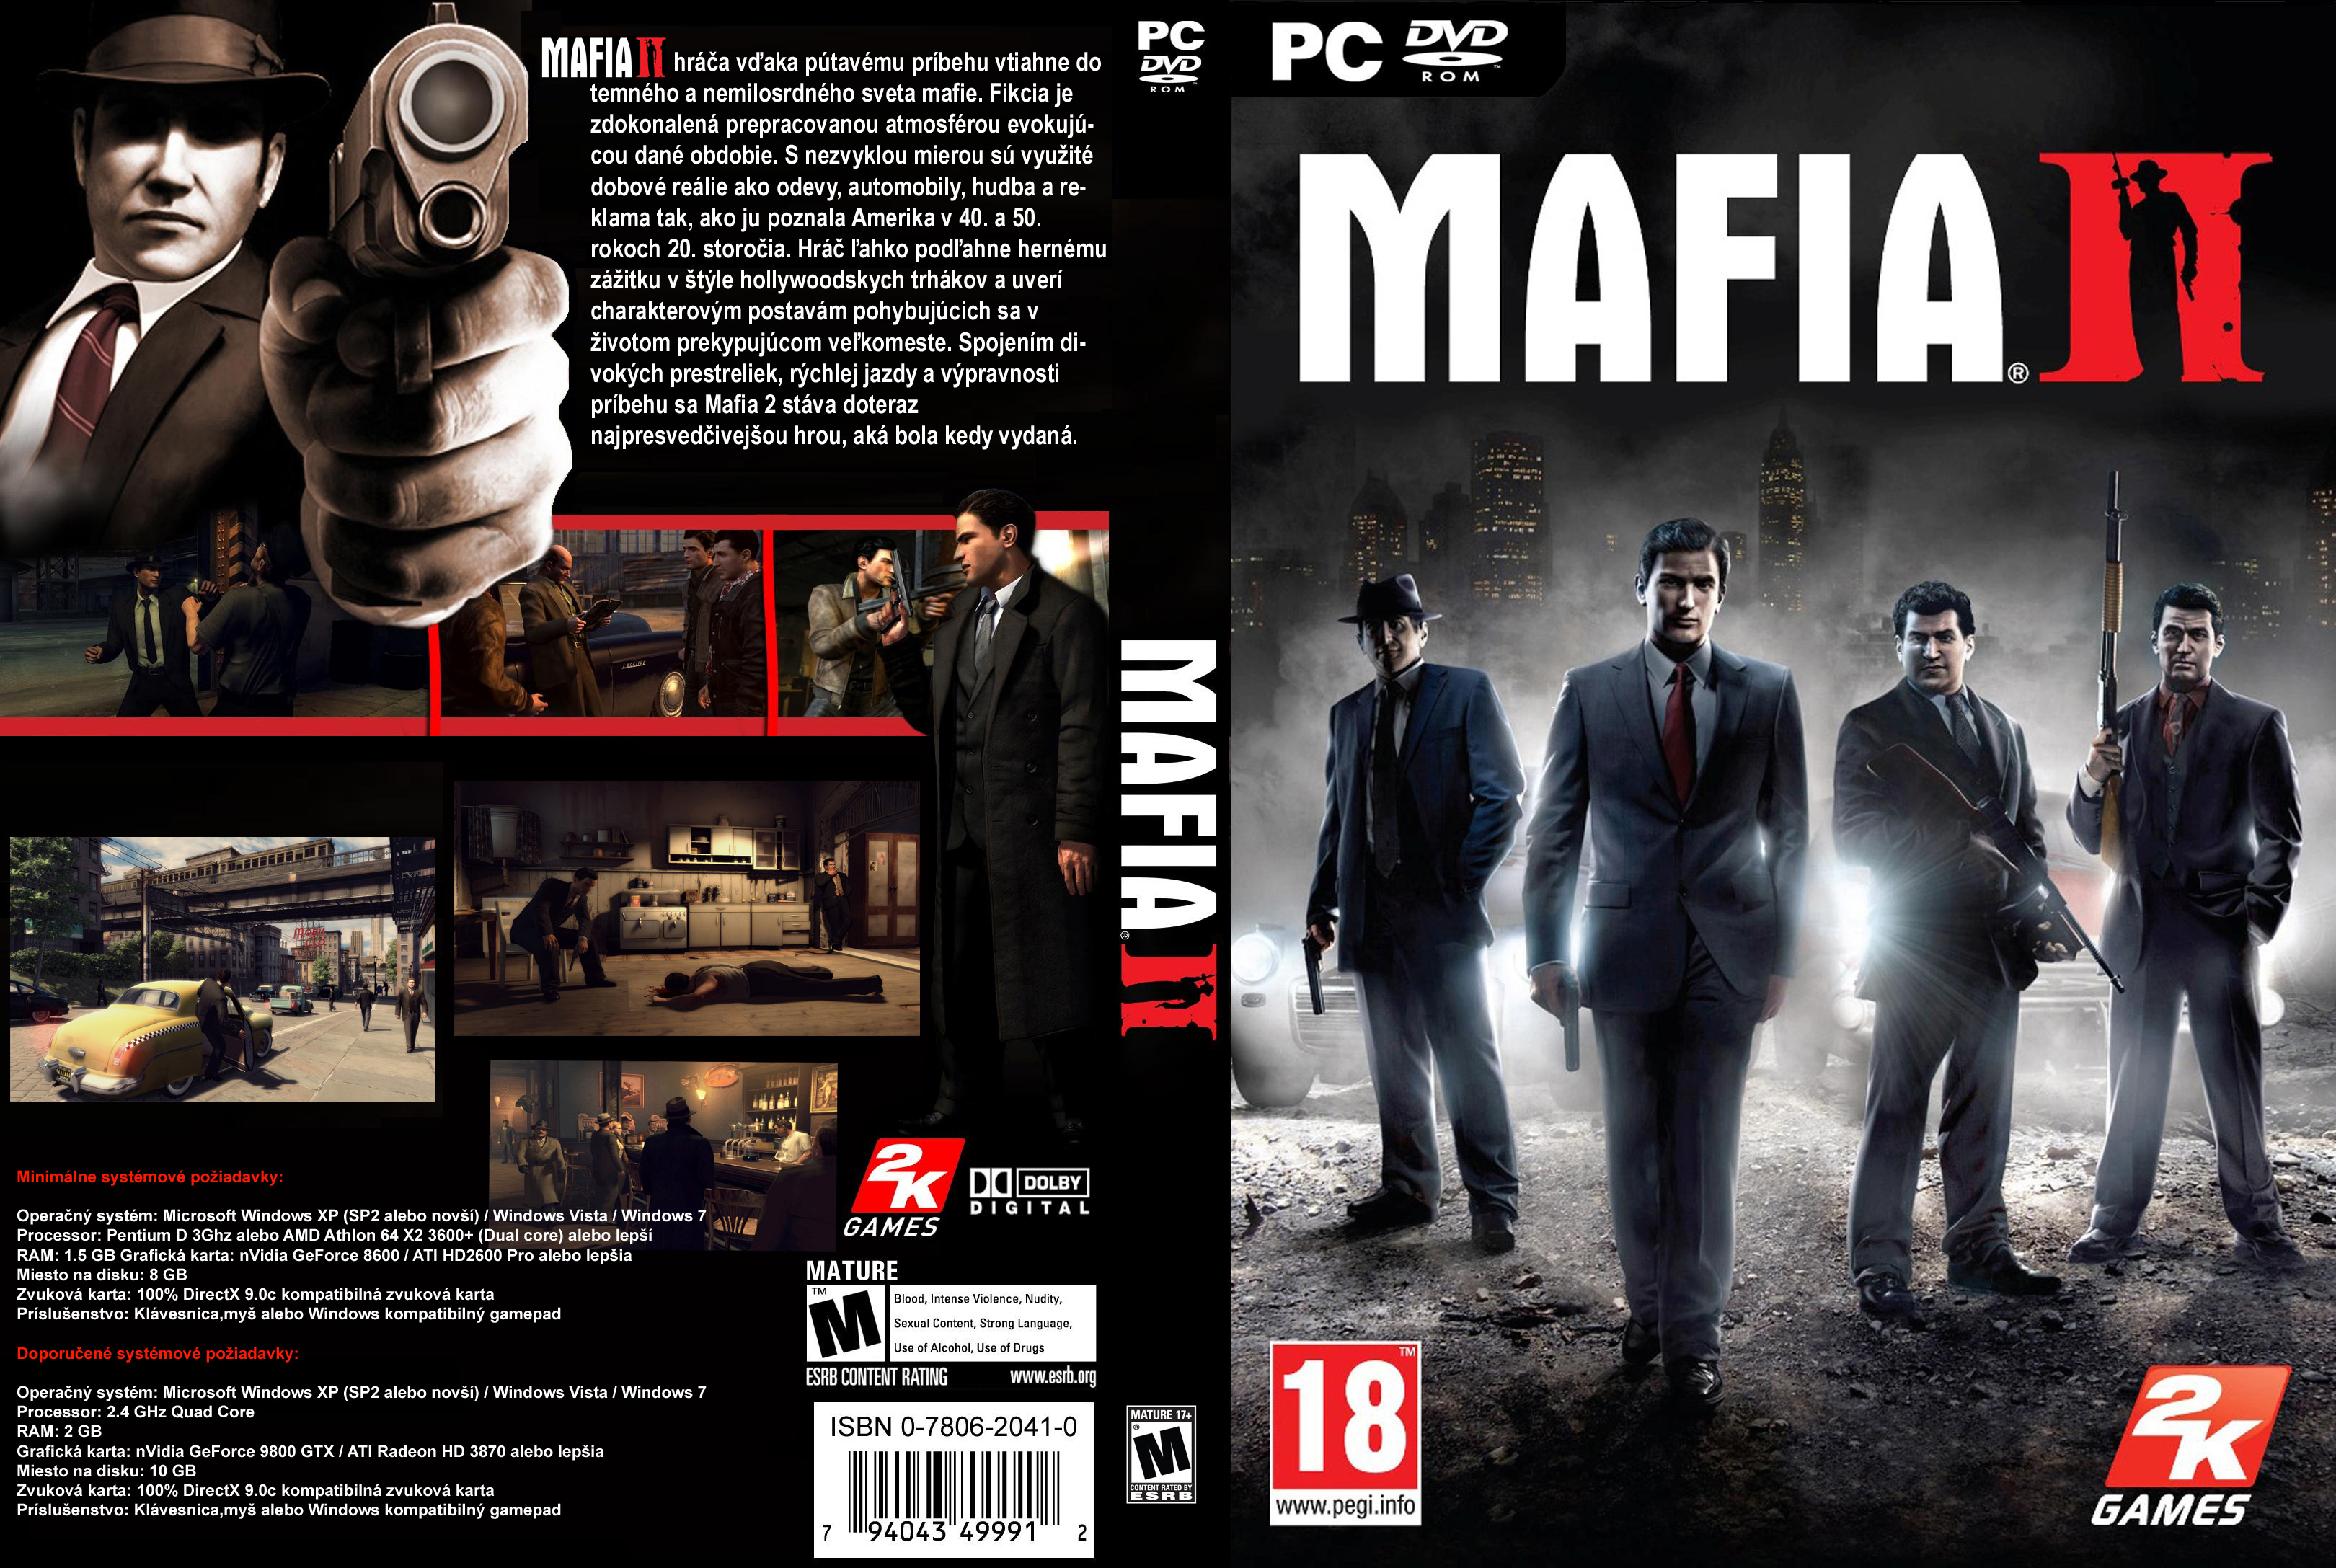 Mafia ii on steam фото 46